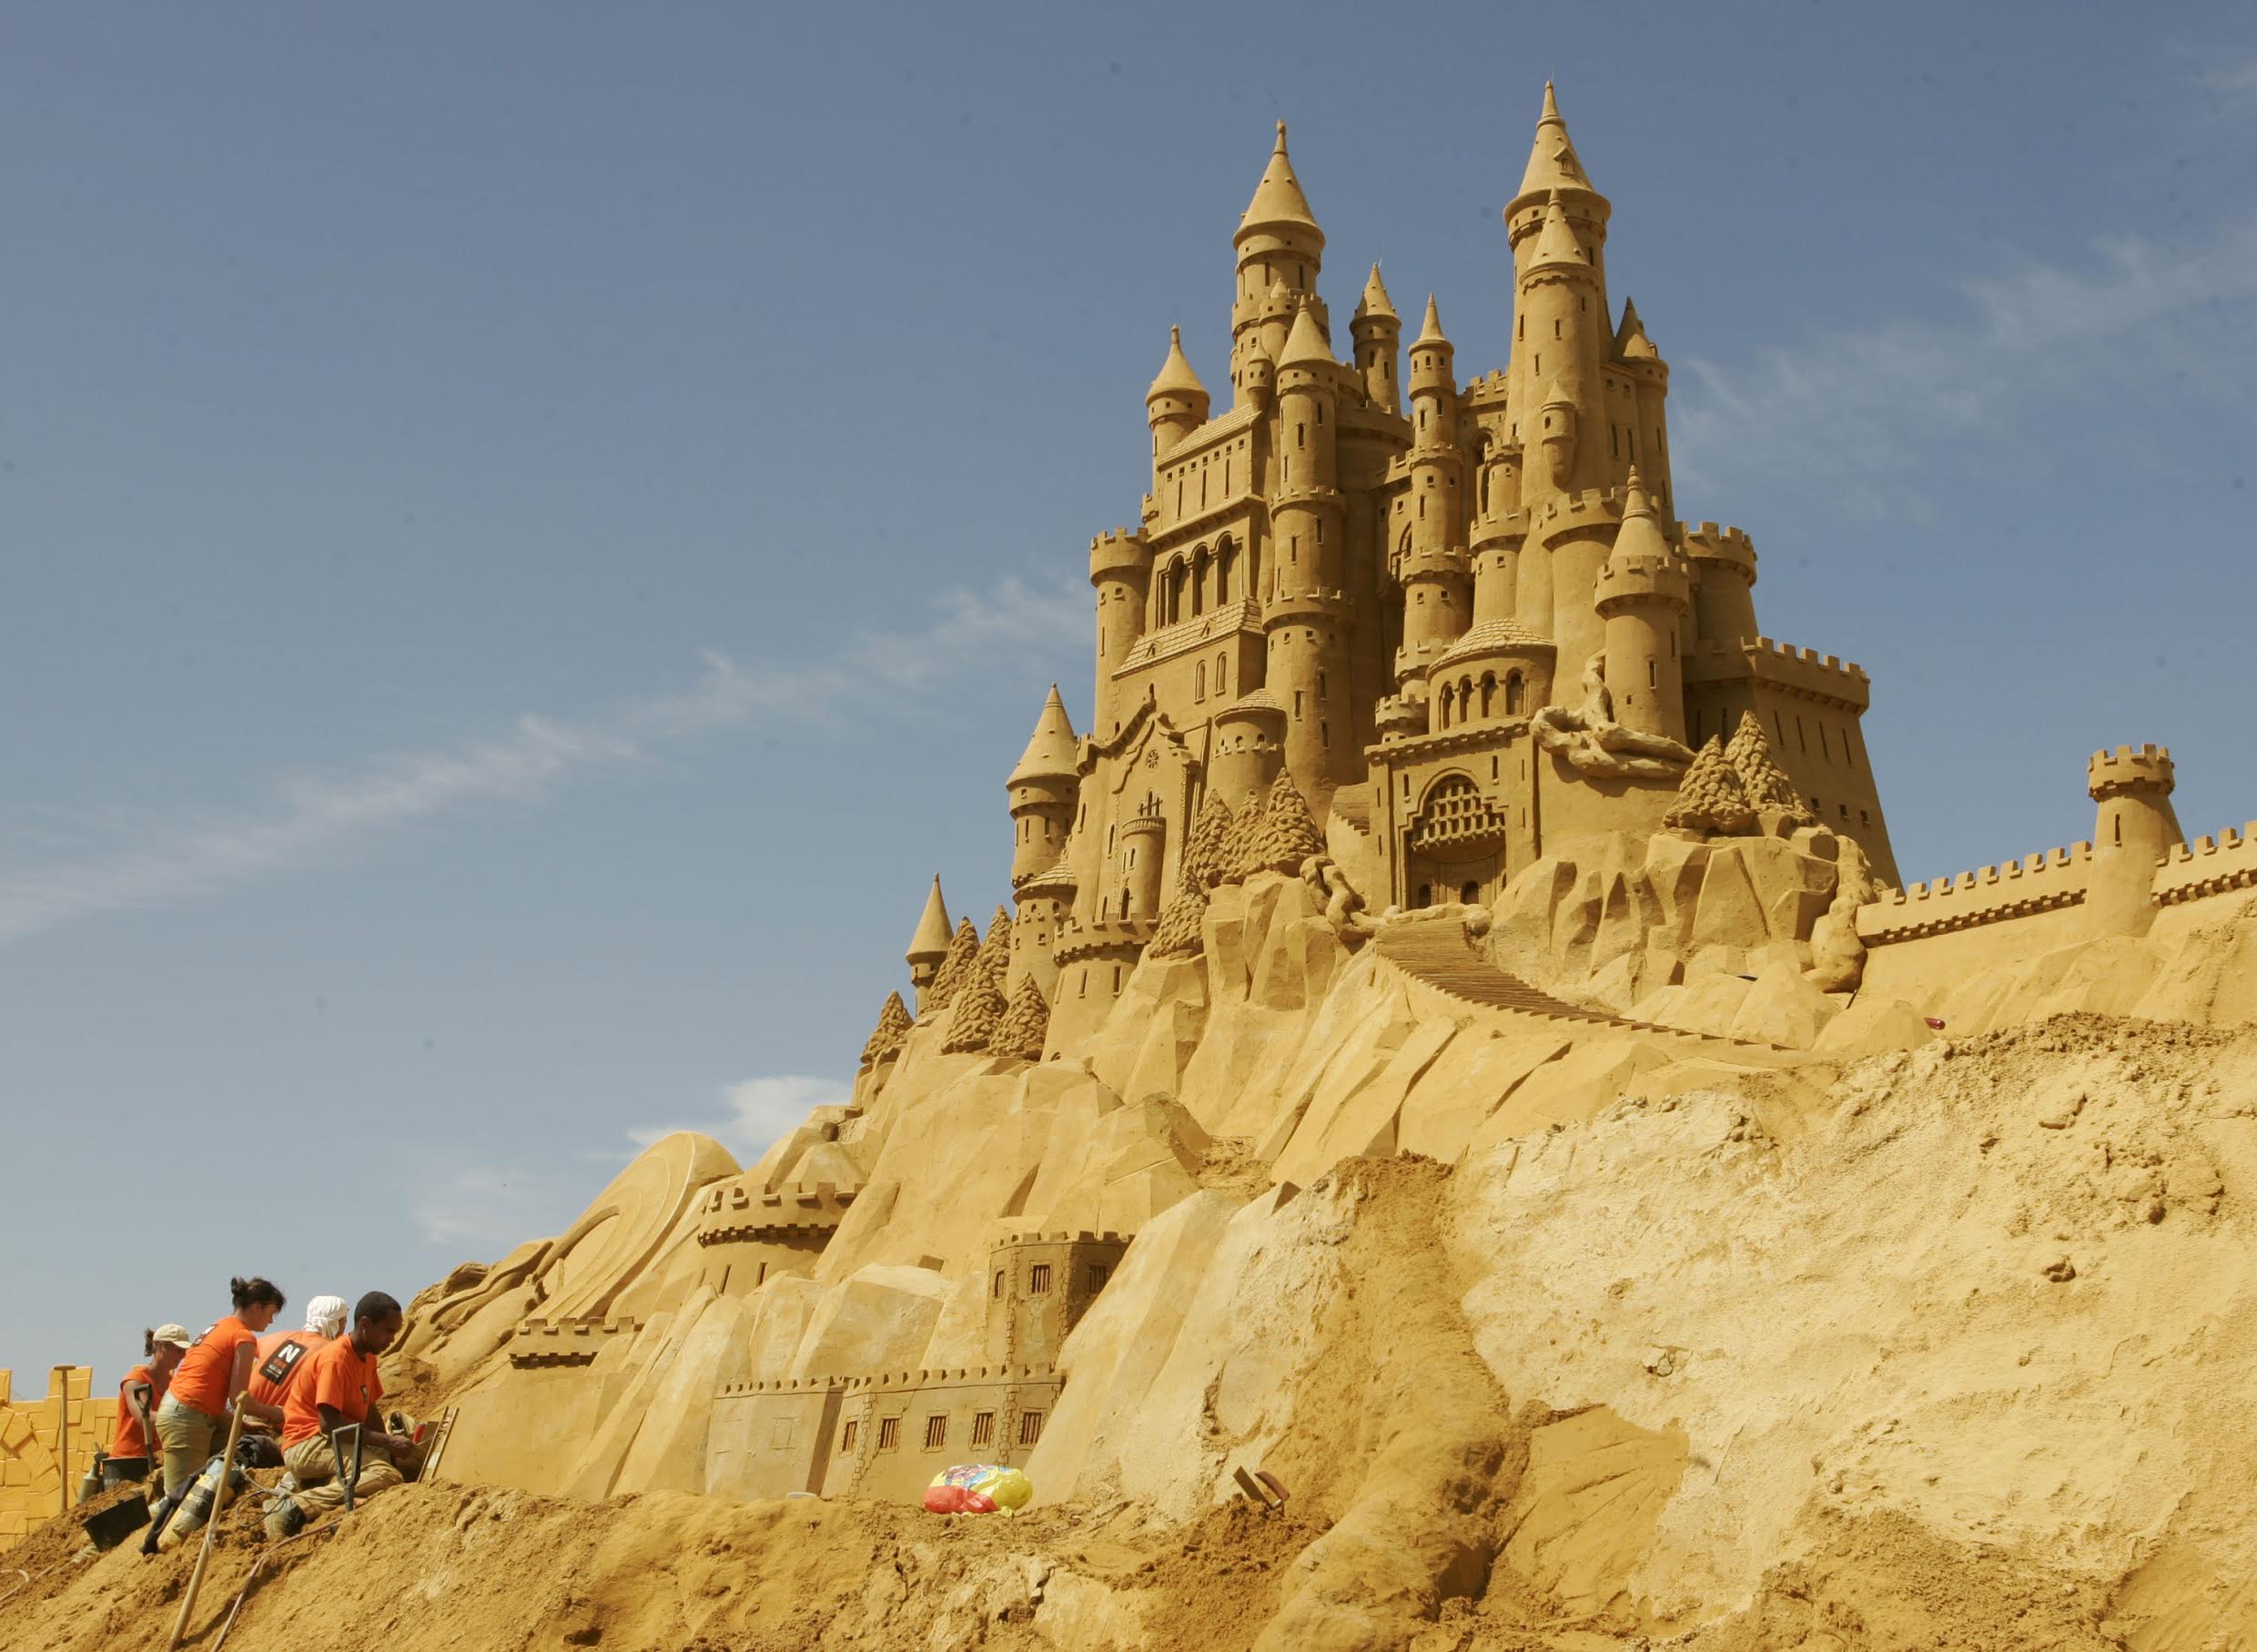 ¿Por qué se mantienen en pie los castillos de arena?